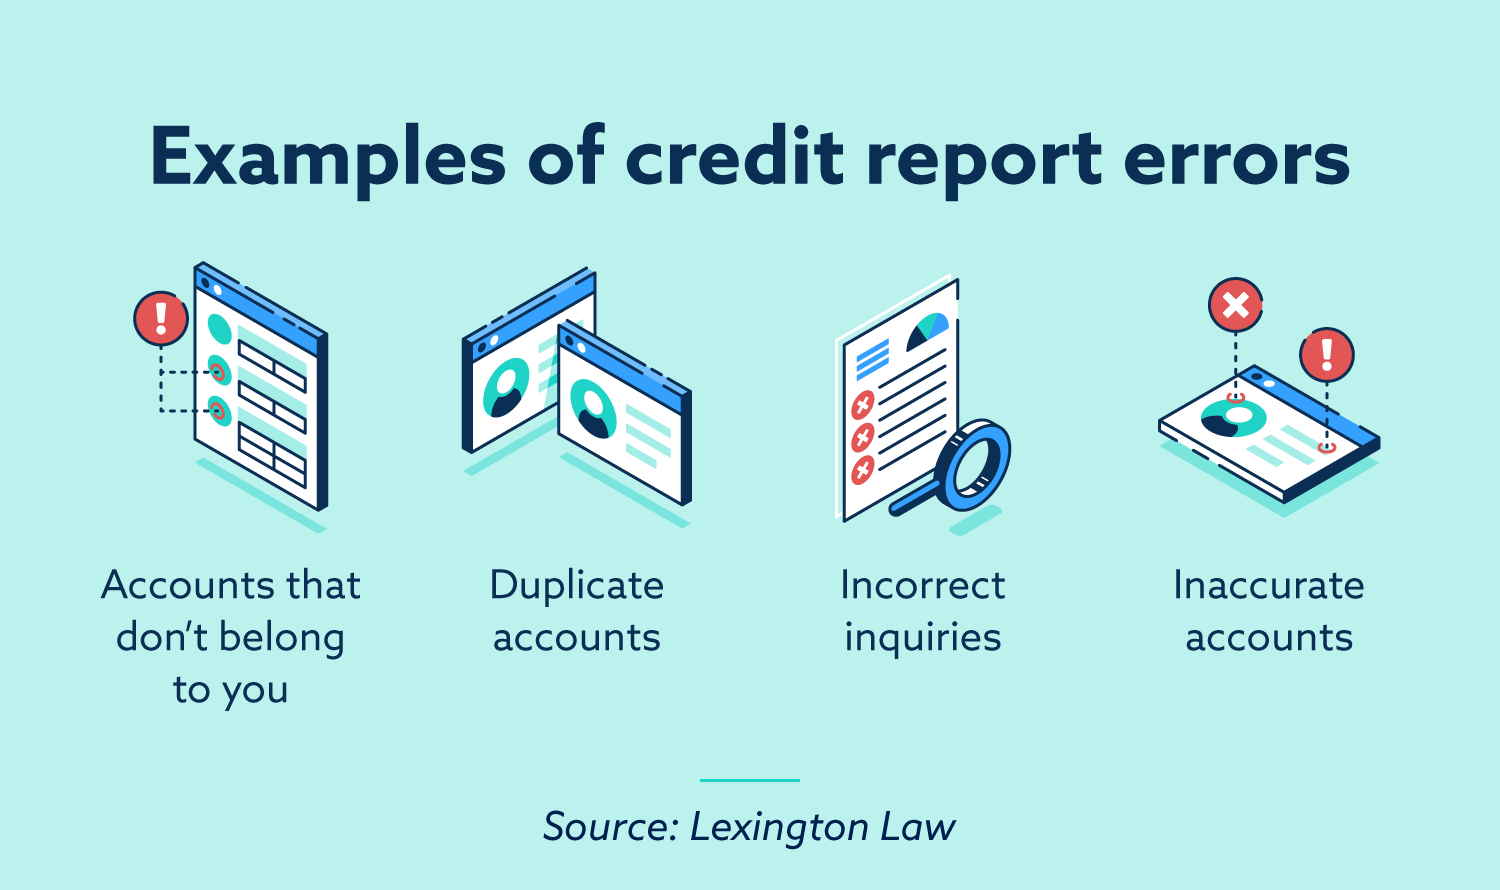 How Does Credit Repair Work?